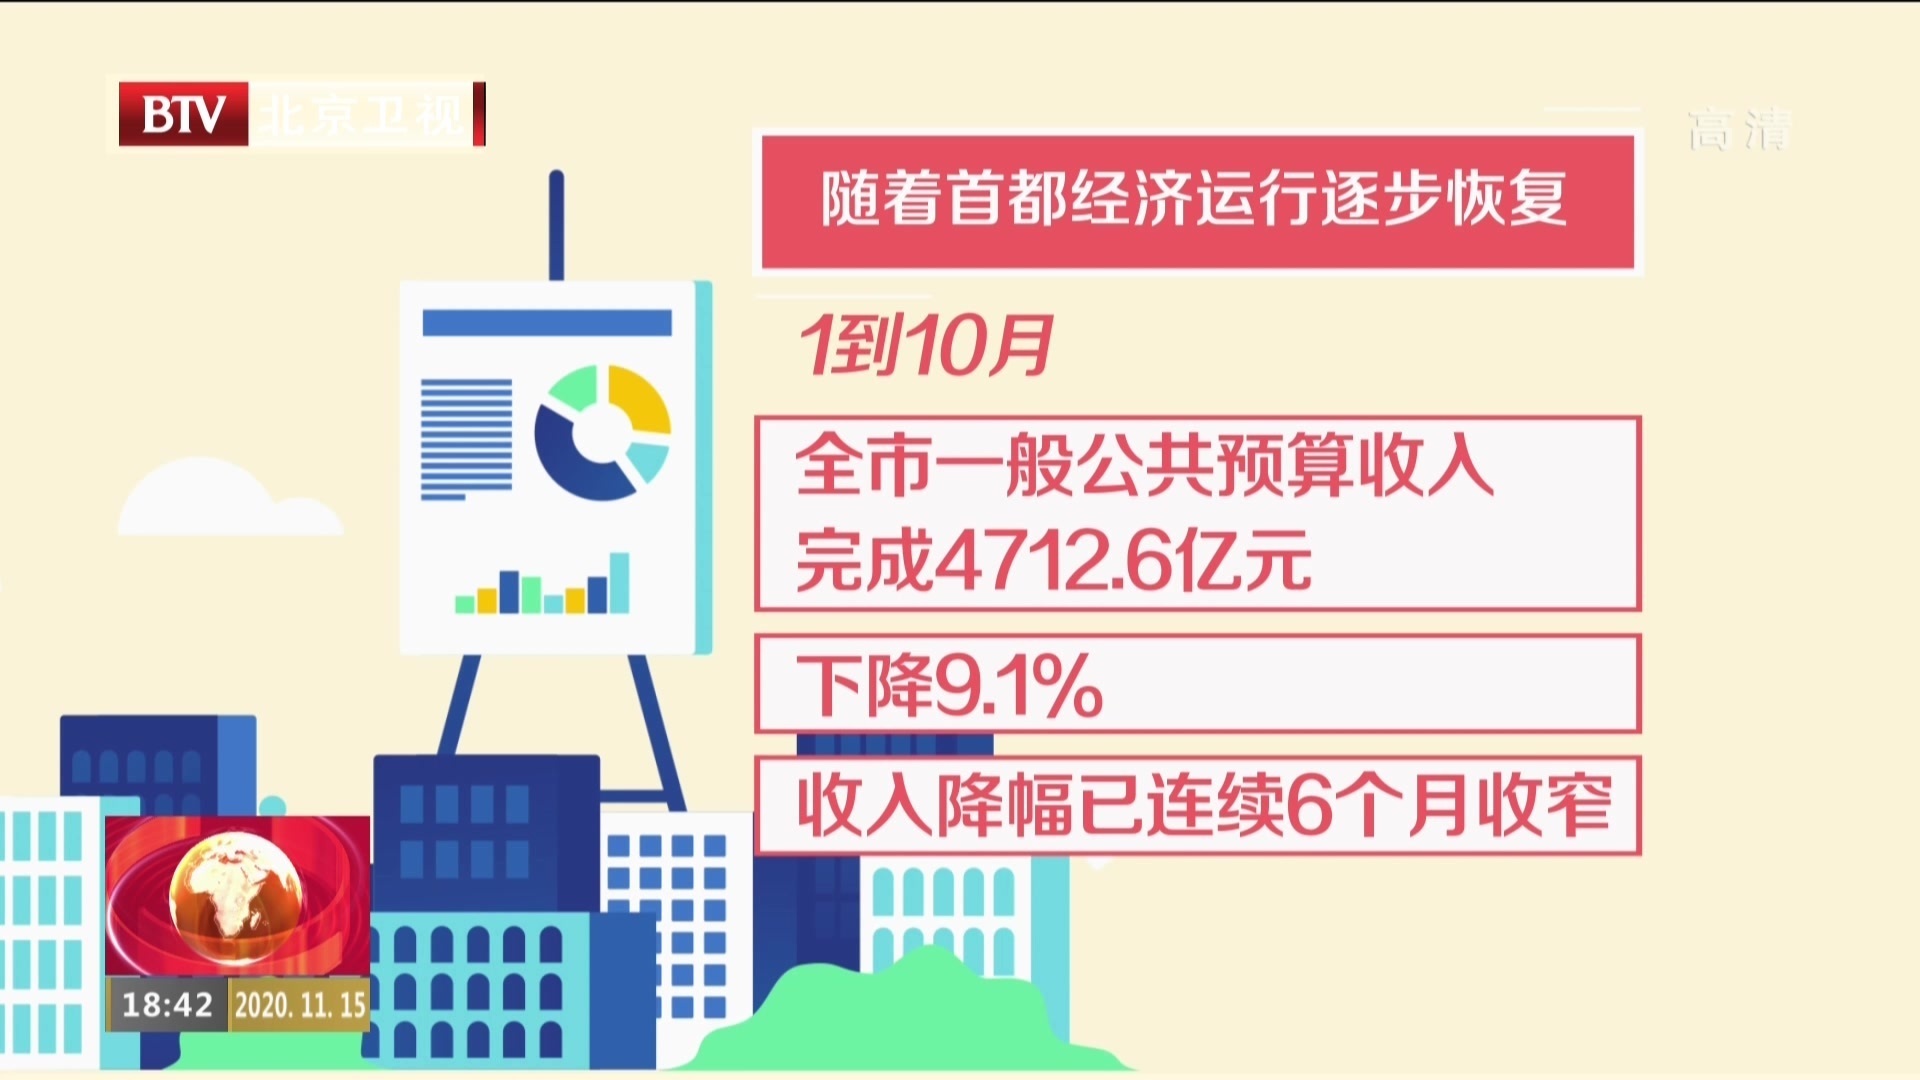 三大主体税种连续3个月正增长  北京财政收入降幅持续收窄